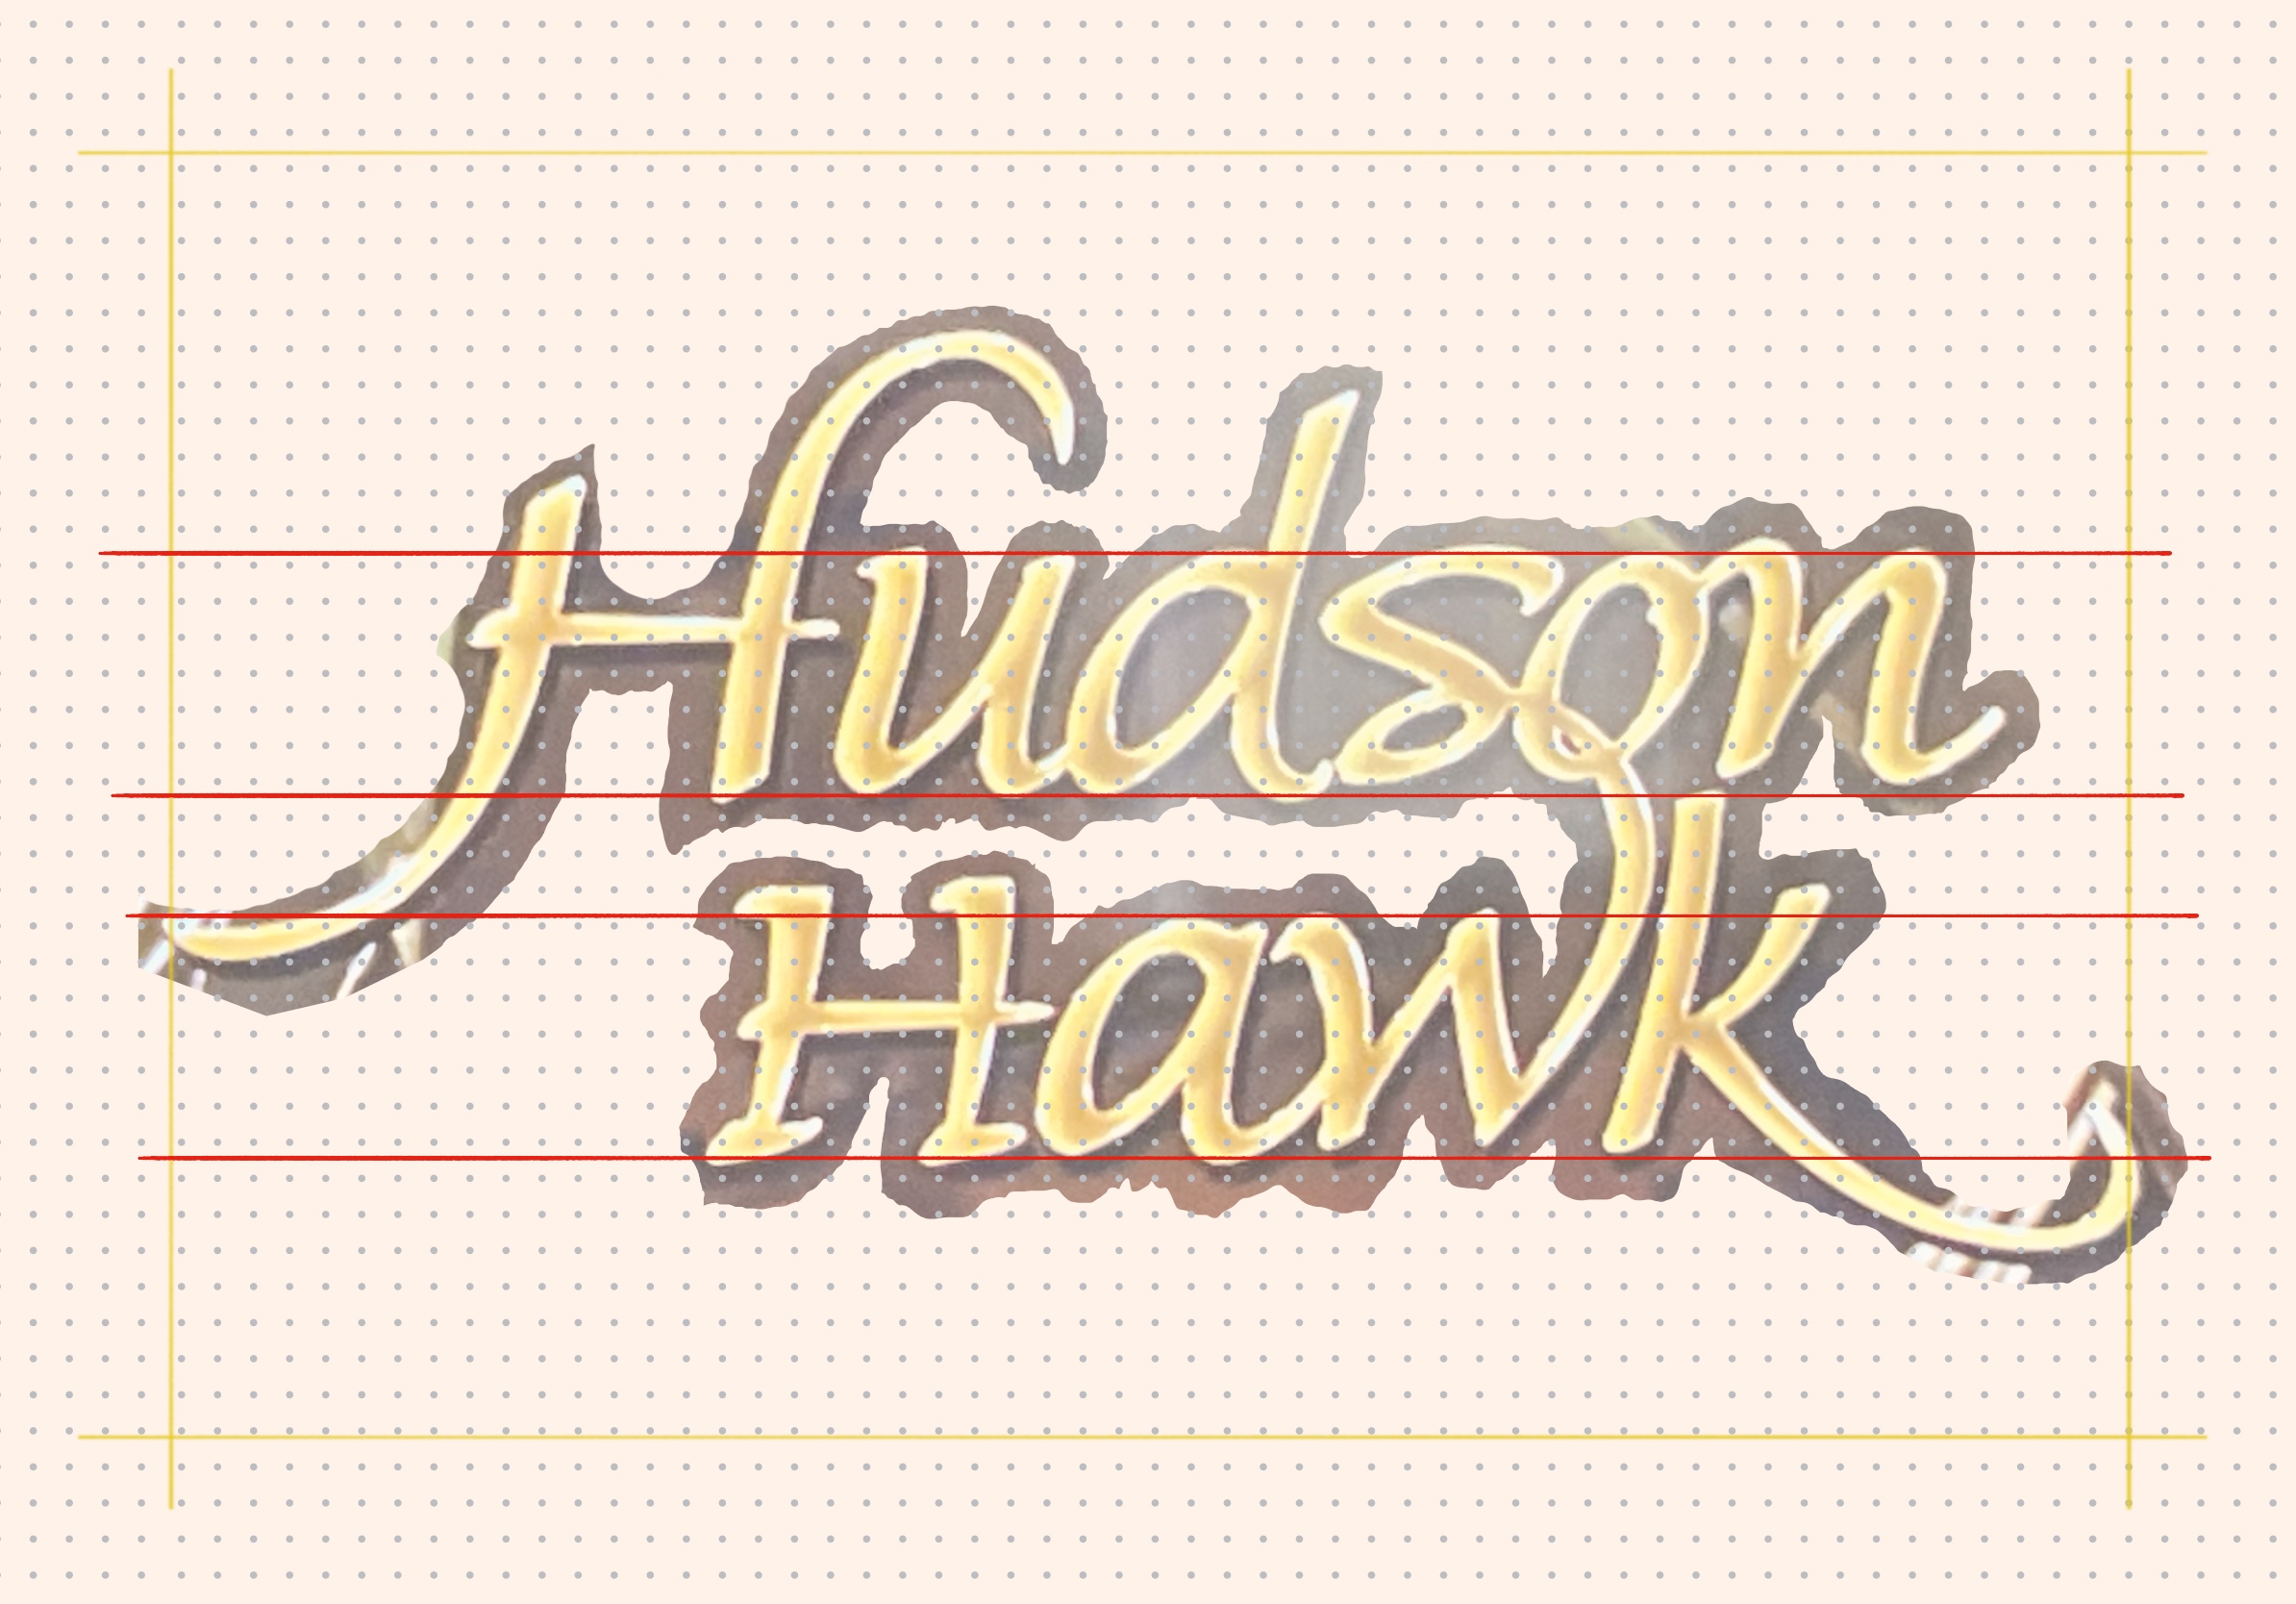 hudsonhawk